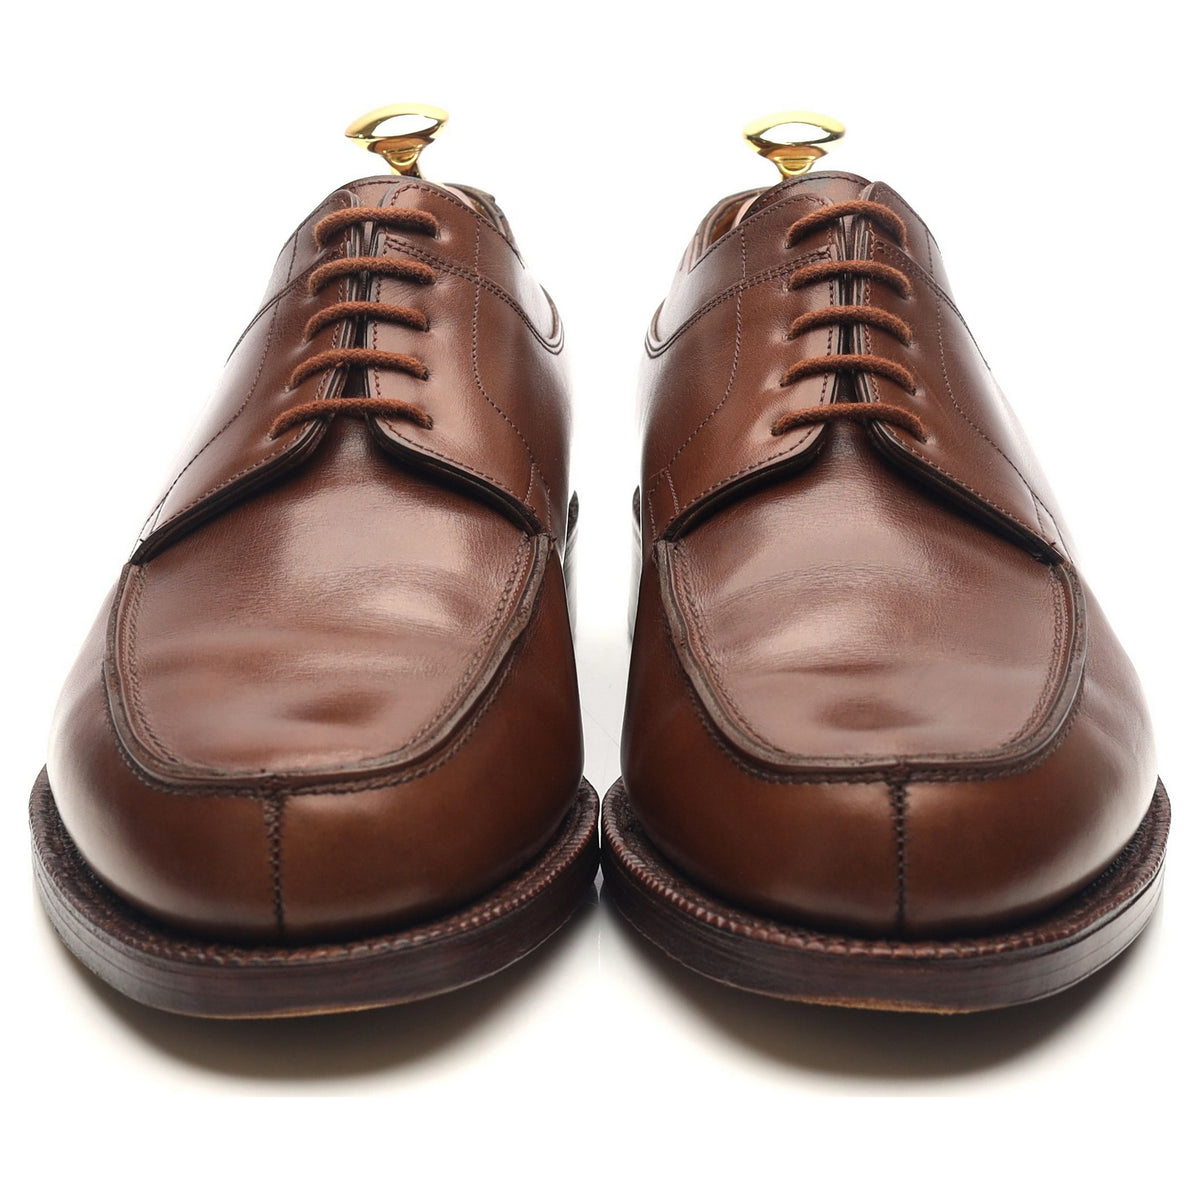 &#39;Barros&#39; Brown Leather Split Toe Derby UK 8.5 EE